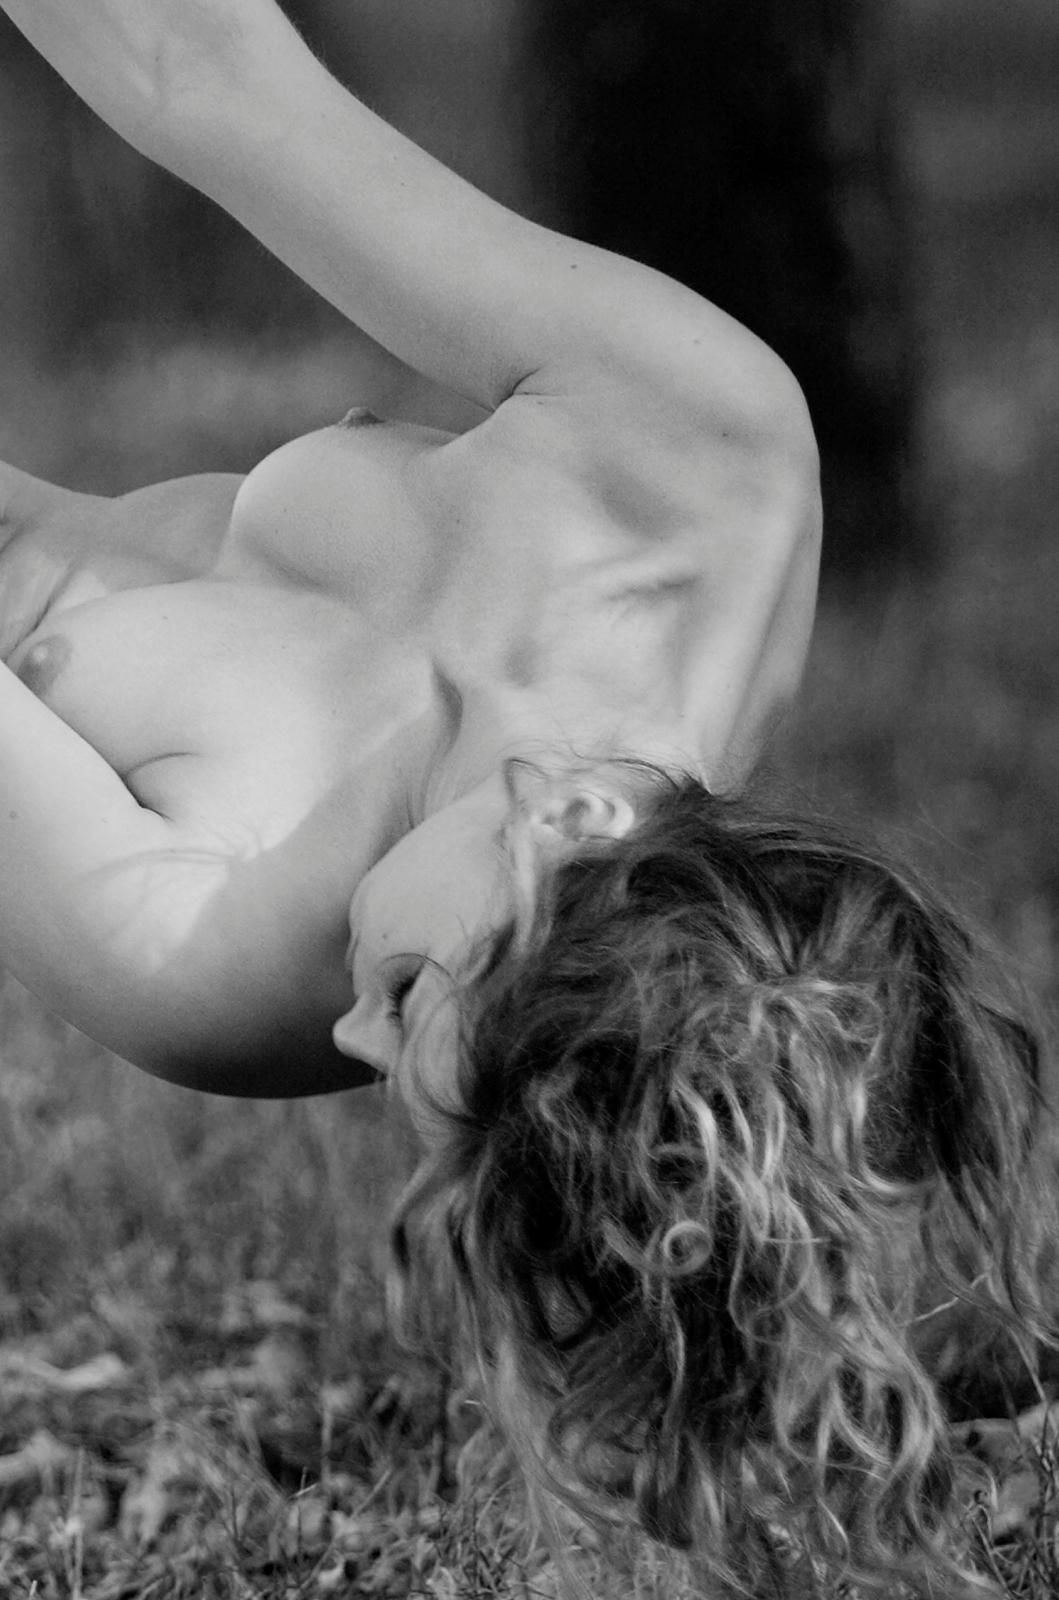 Édition limitée signée d'un dessin de nu, Noir et blanc, Sensuel, Contemporain - Swing - Photograph de Ian Sanderson